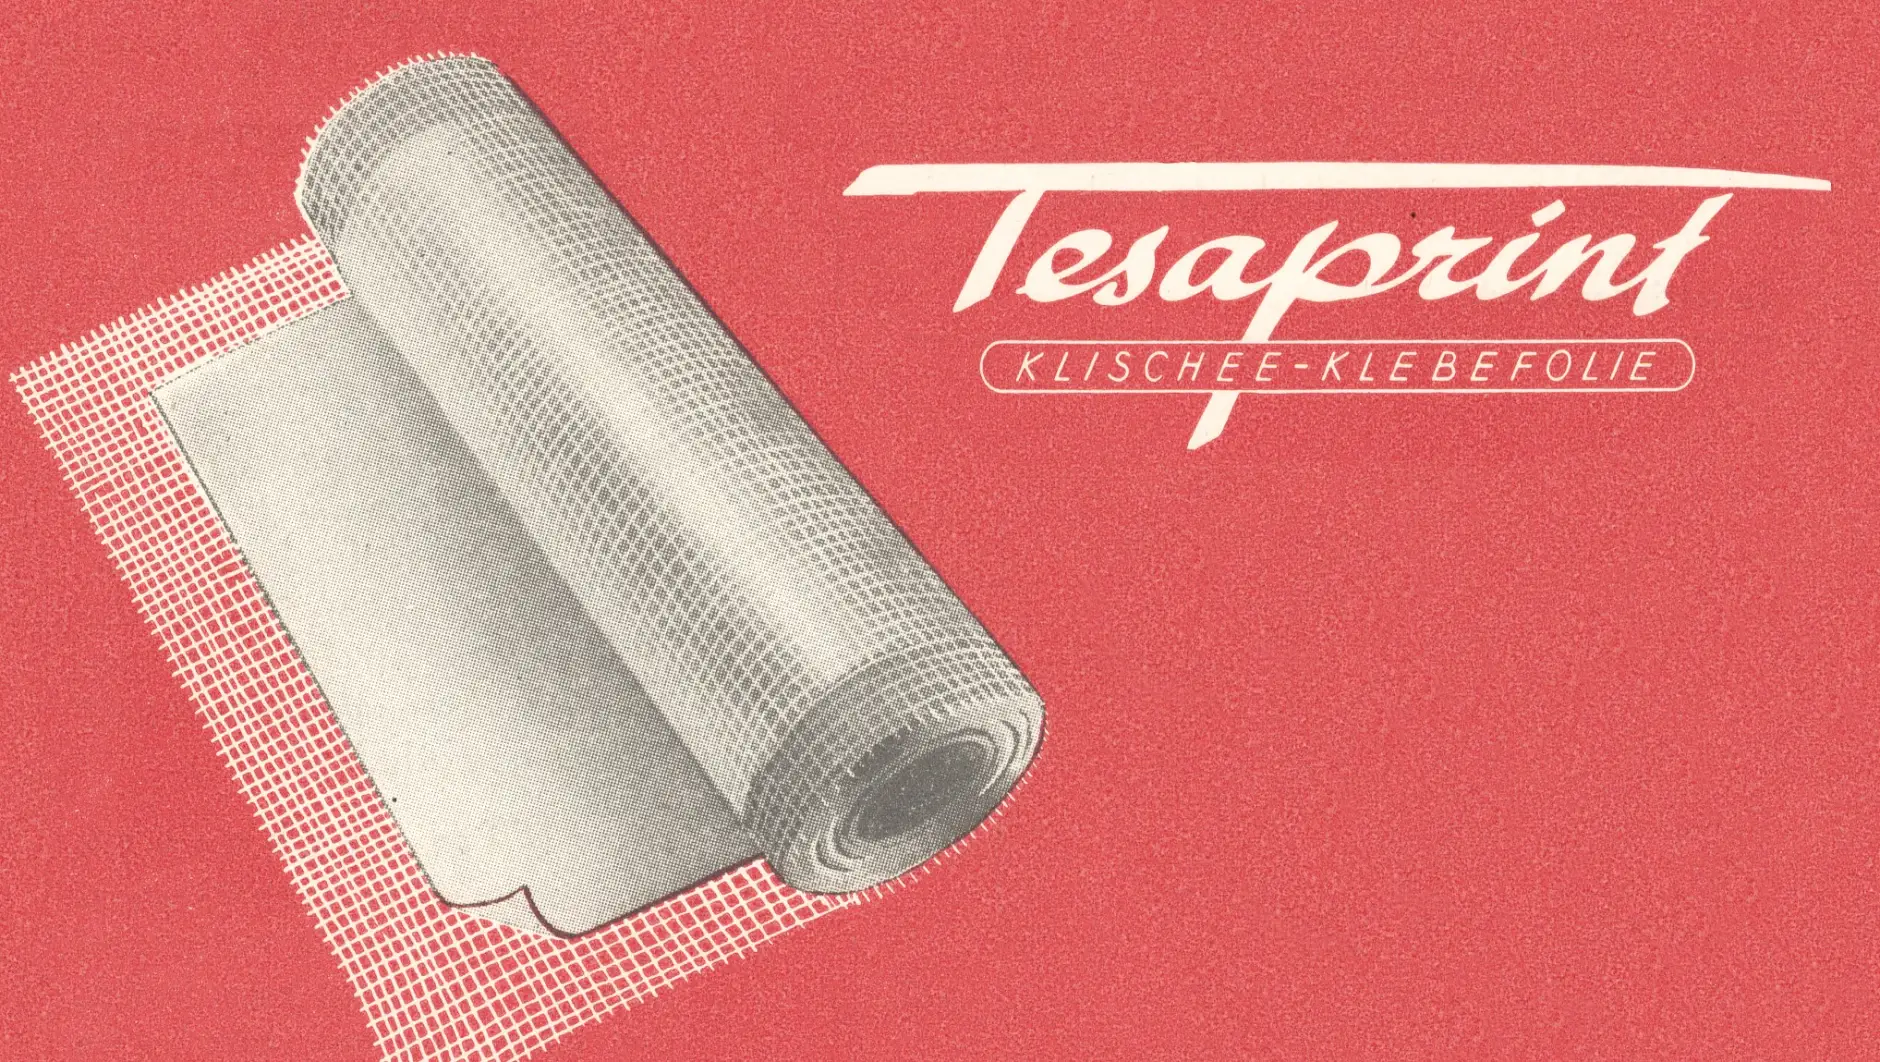 tesaprint ถูกใช้ในอุตสาหกรรมการพิมพ์แล้วในปี 1949